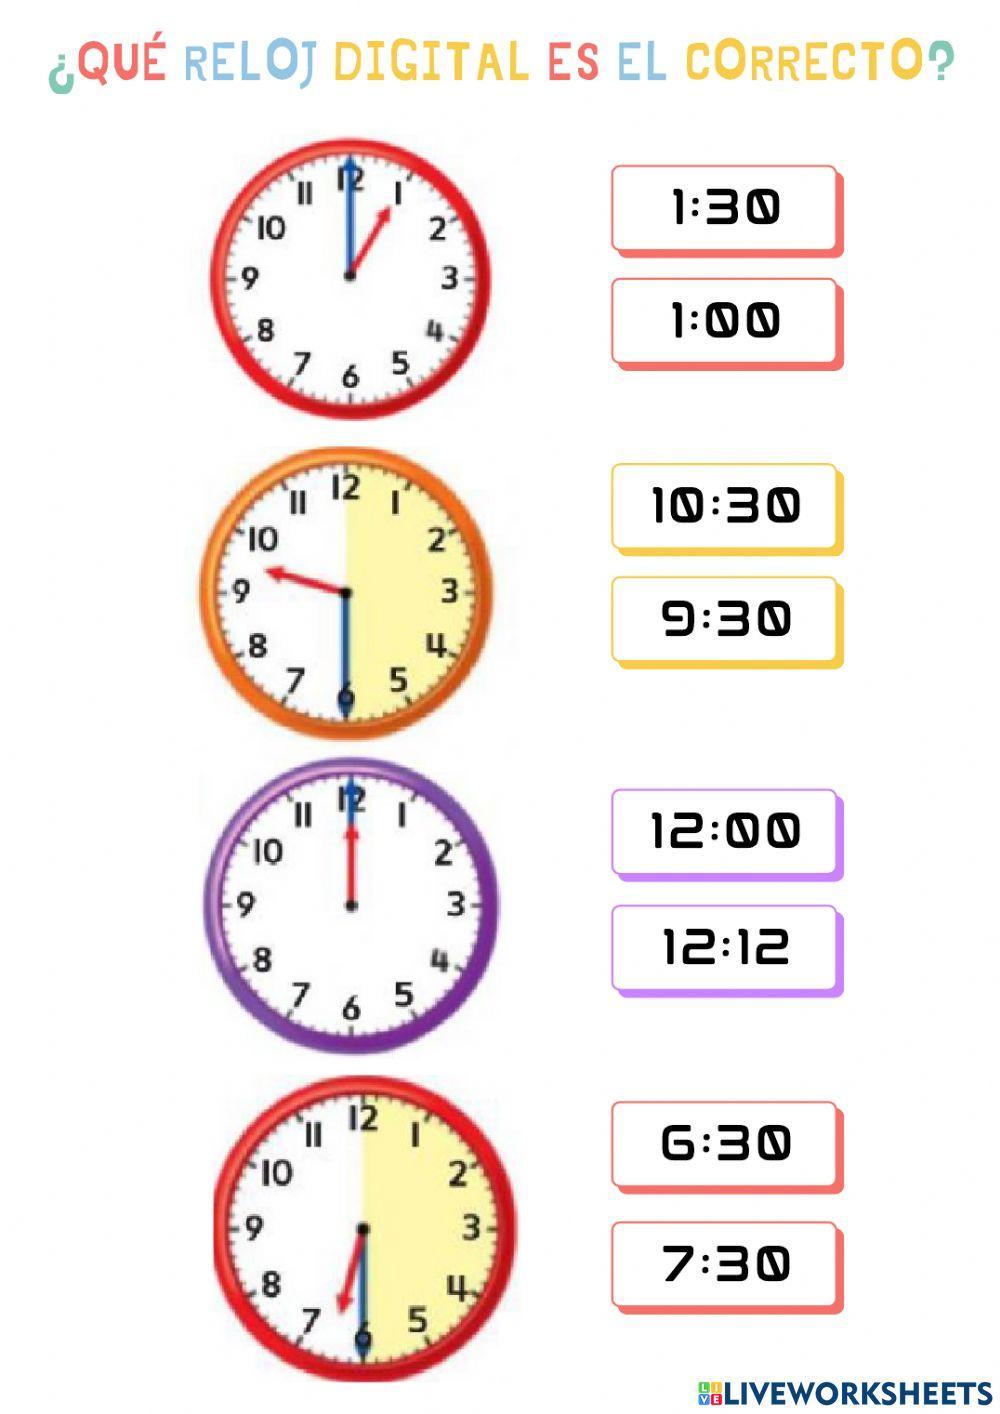 El reloj: hora en punto y media hora